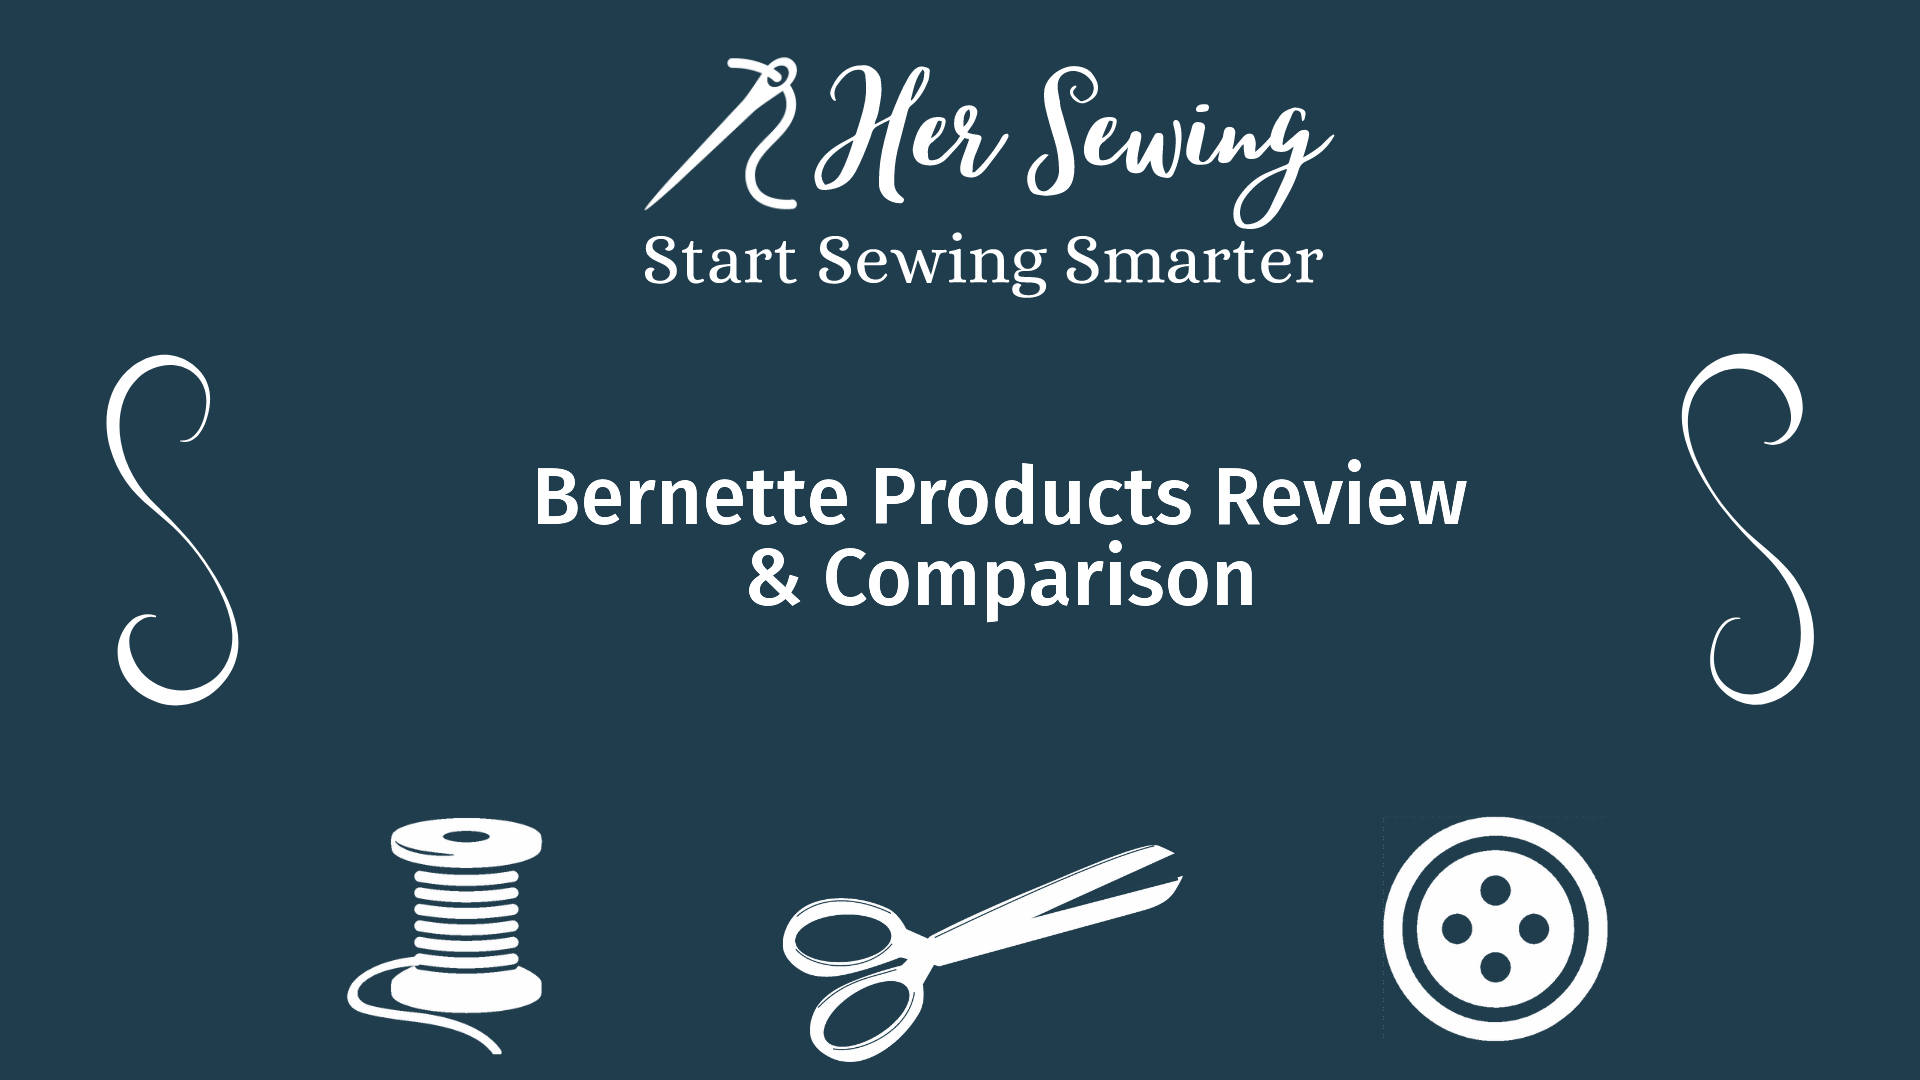 Bernette Products Review & Comparison